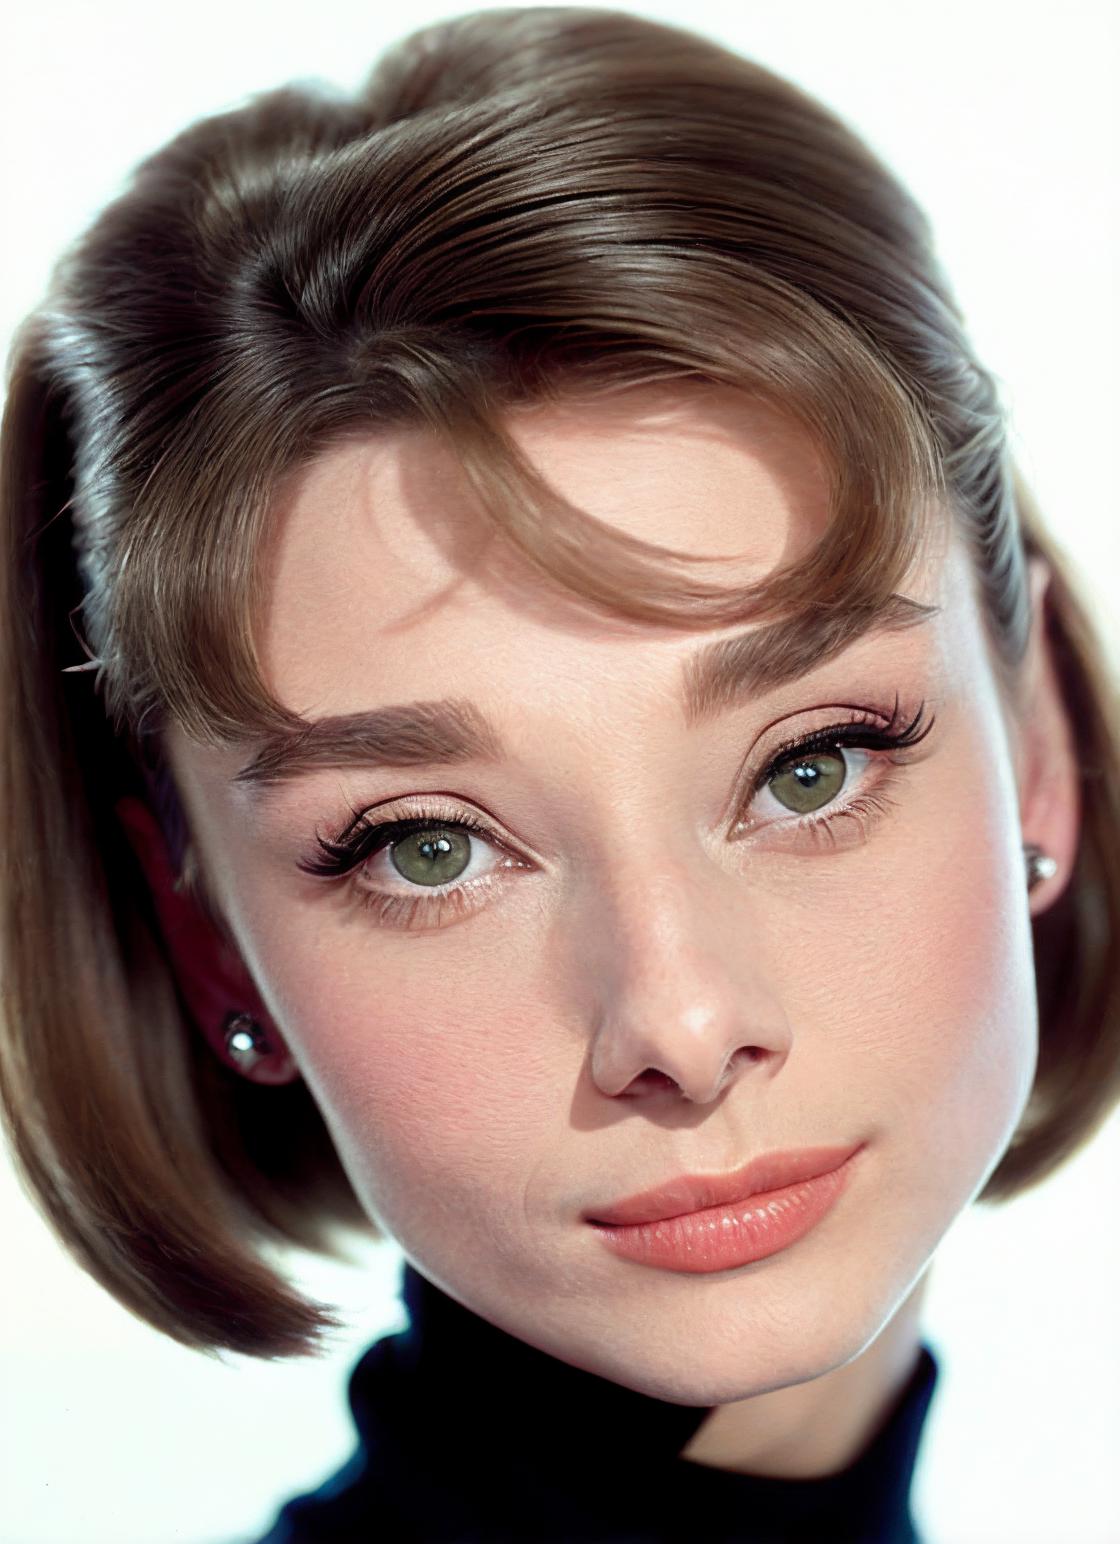 Audrey Hepburn image by astragartist